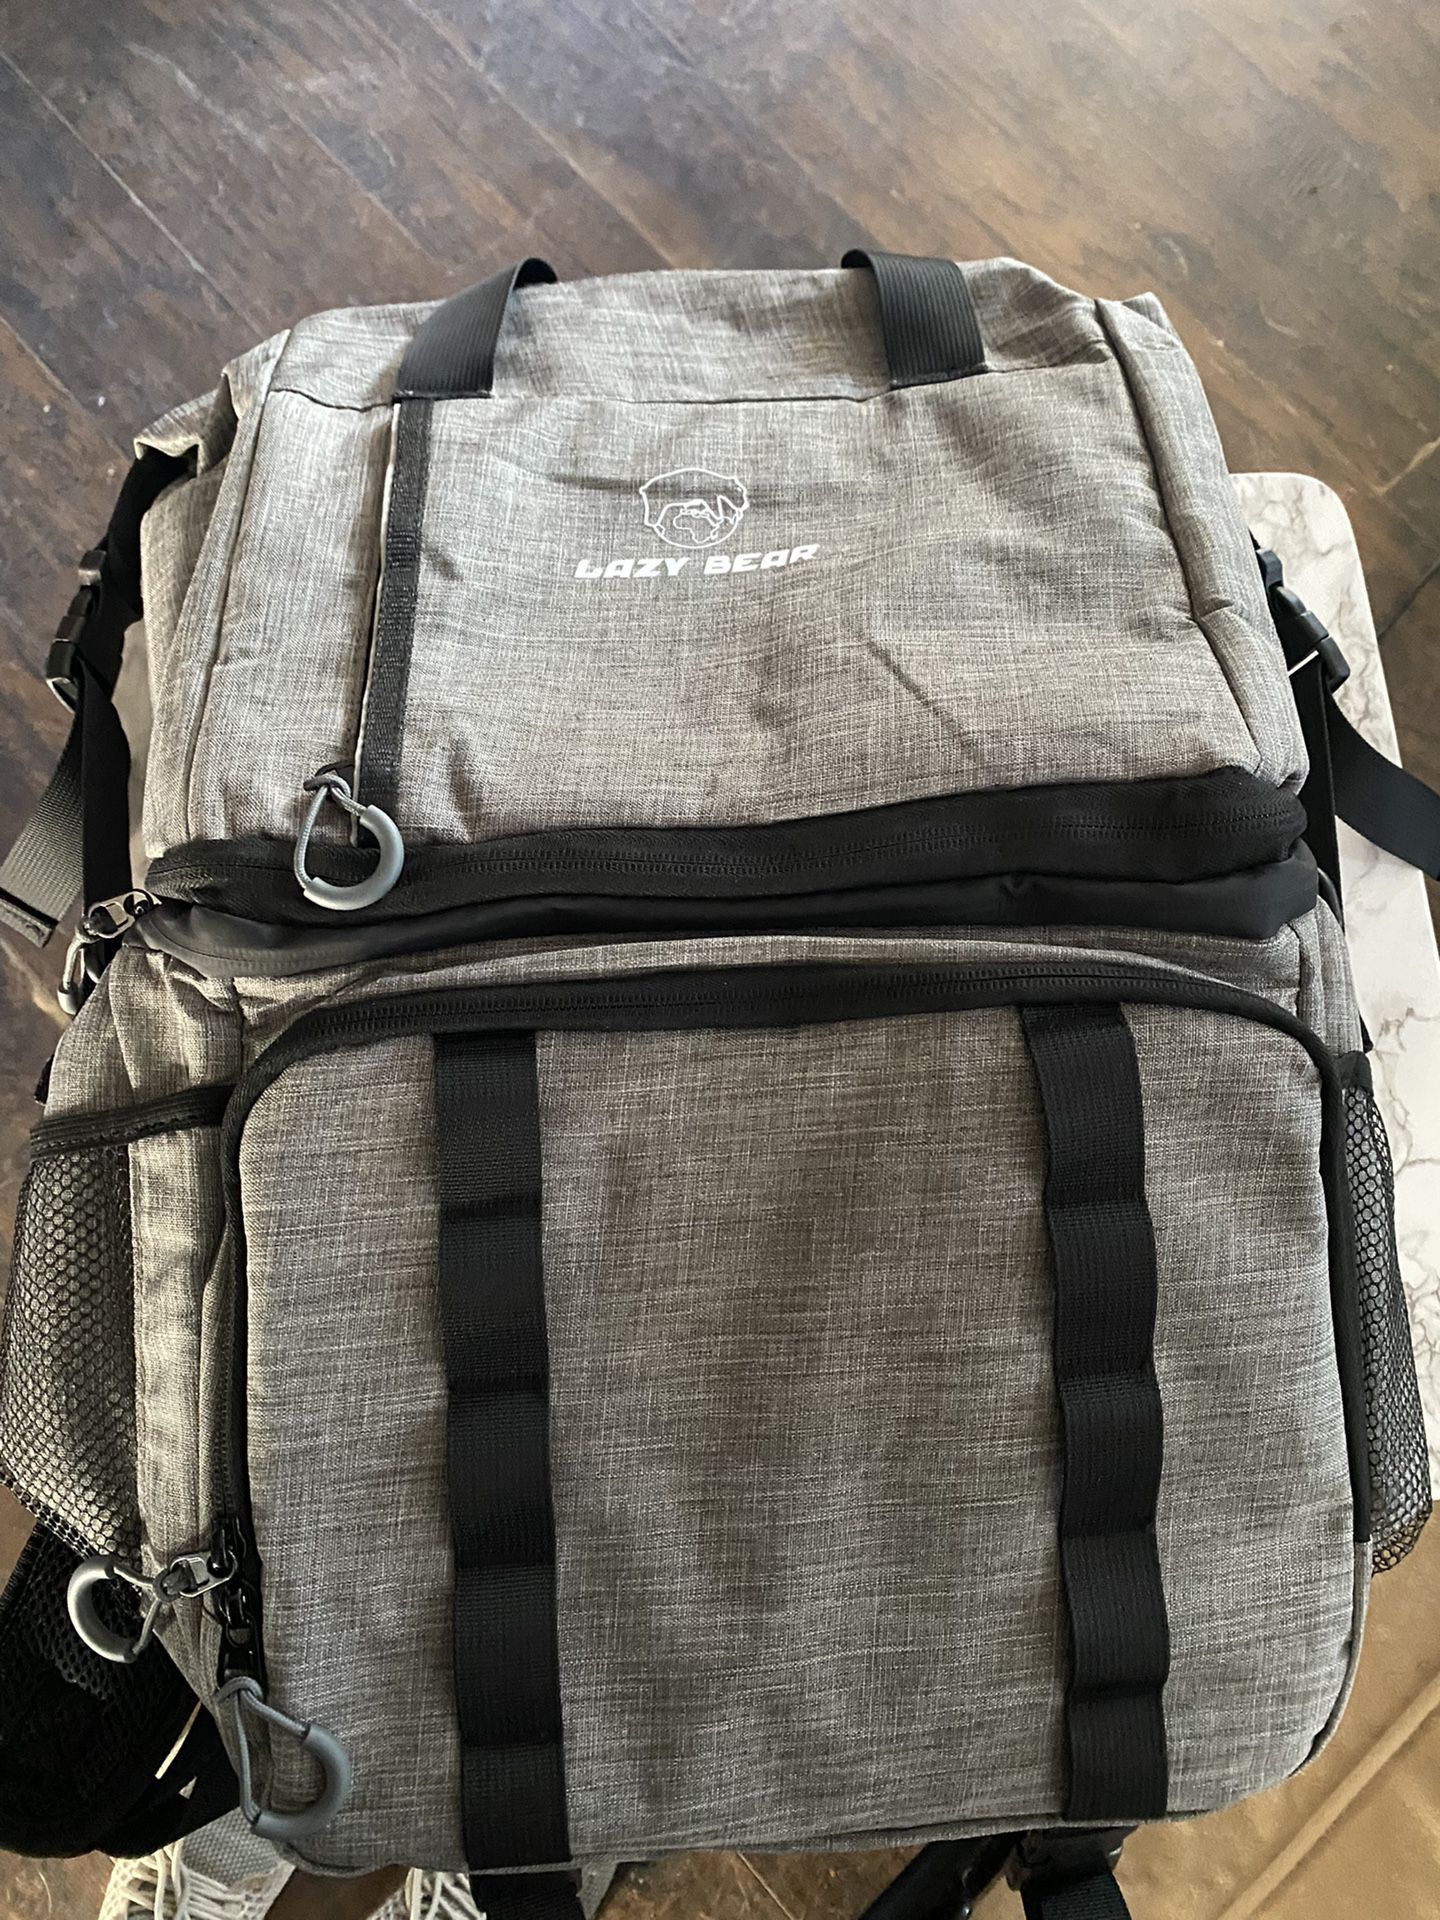 LAZY BEAR Cooler Backpack